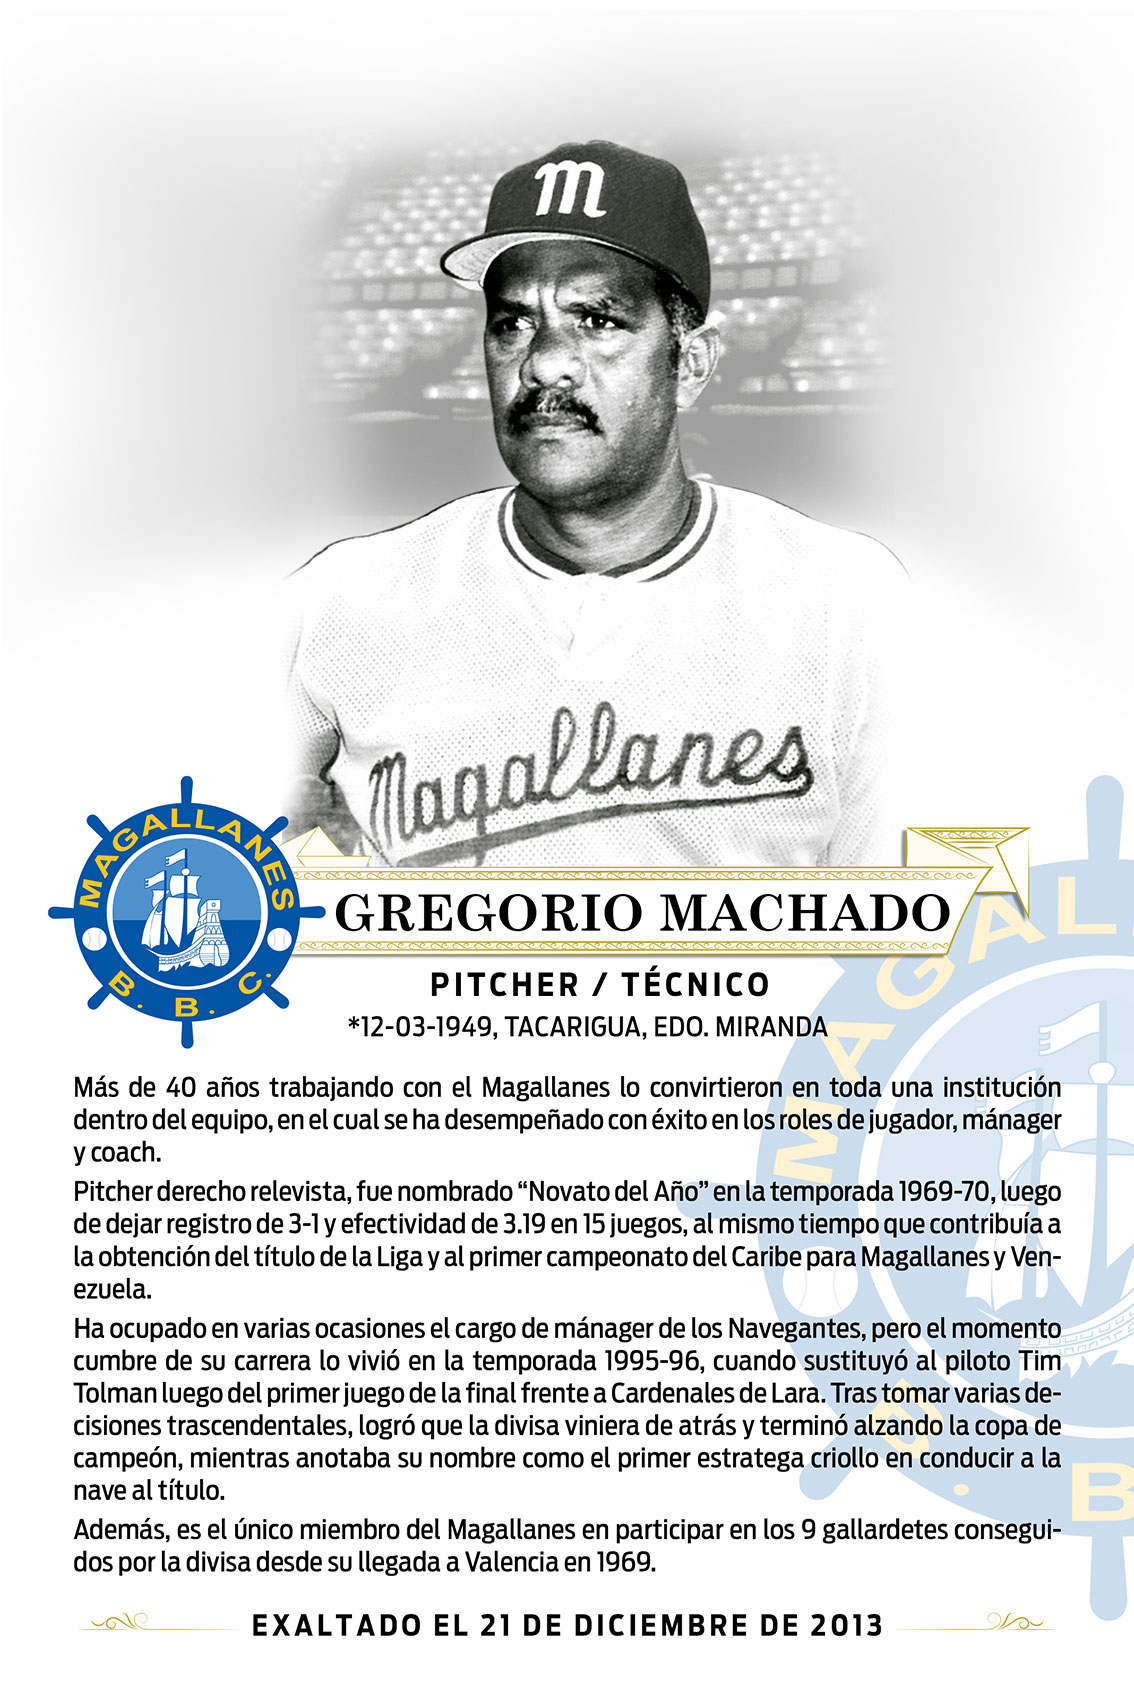 Gregorio Machado